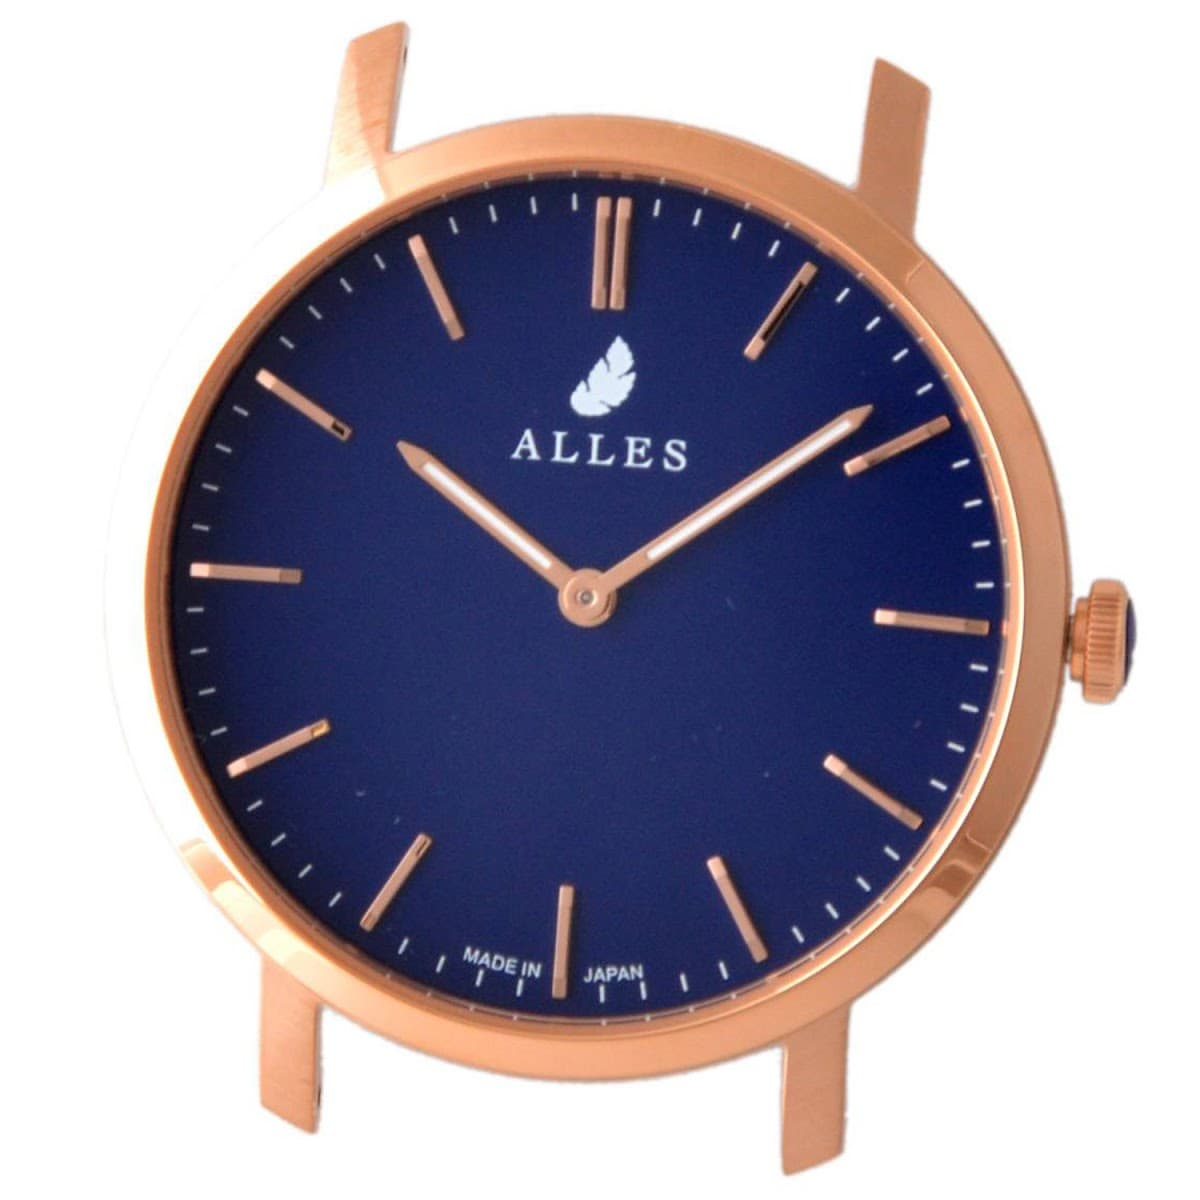 アレス ALLES 腕時計用ヘッド ベルト別売り メンズ レディース ユニセックス クォーツ アナログ 丸型 ゴールド×ネイビー 送料無料/込 父の日ギフト